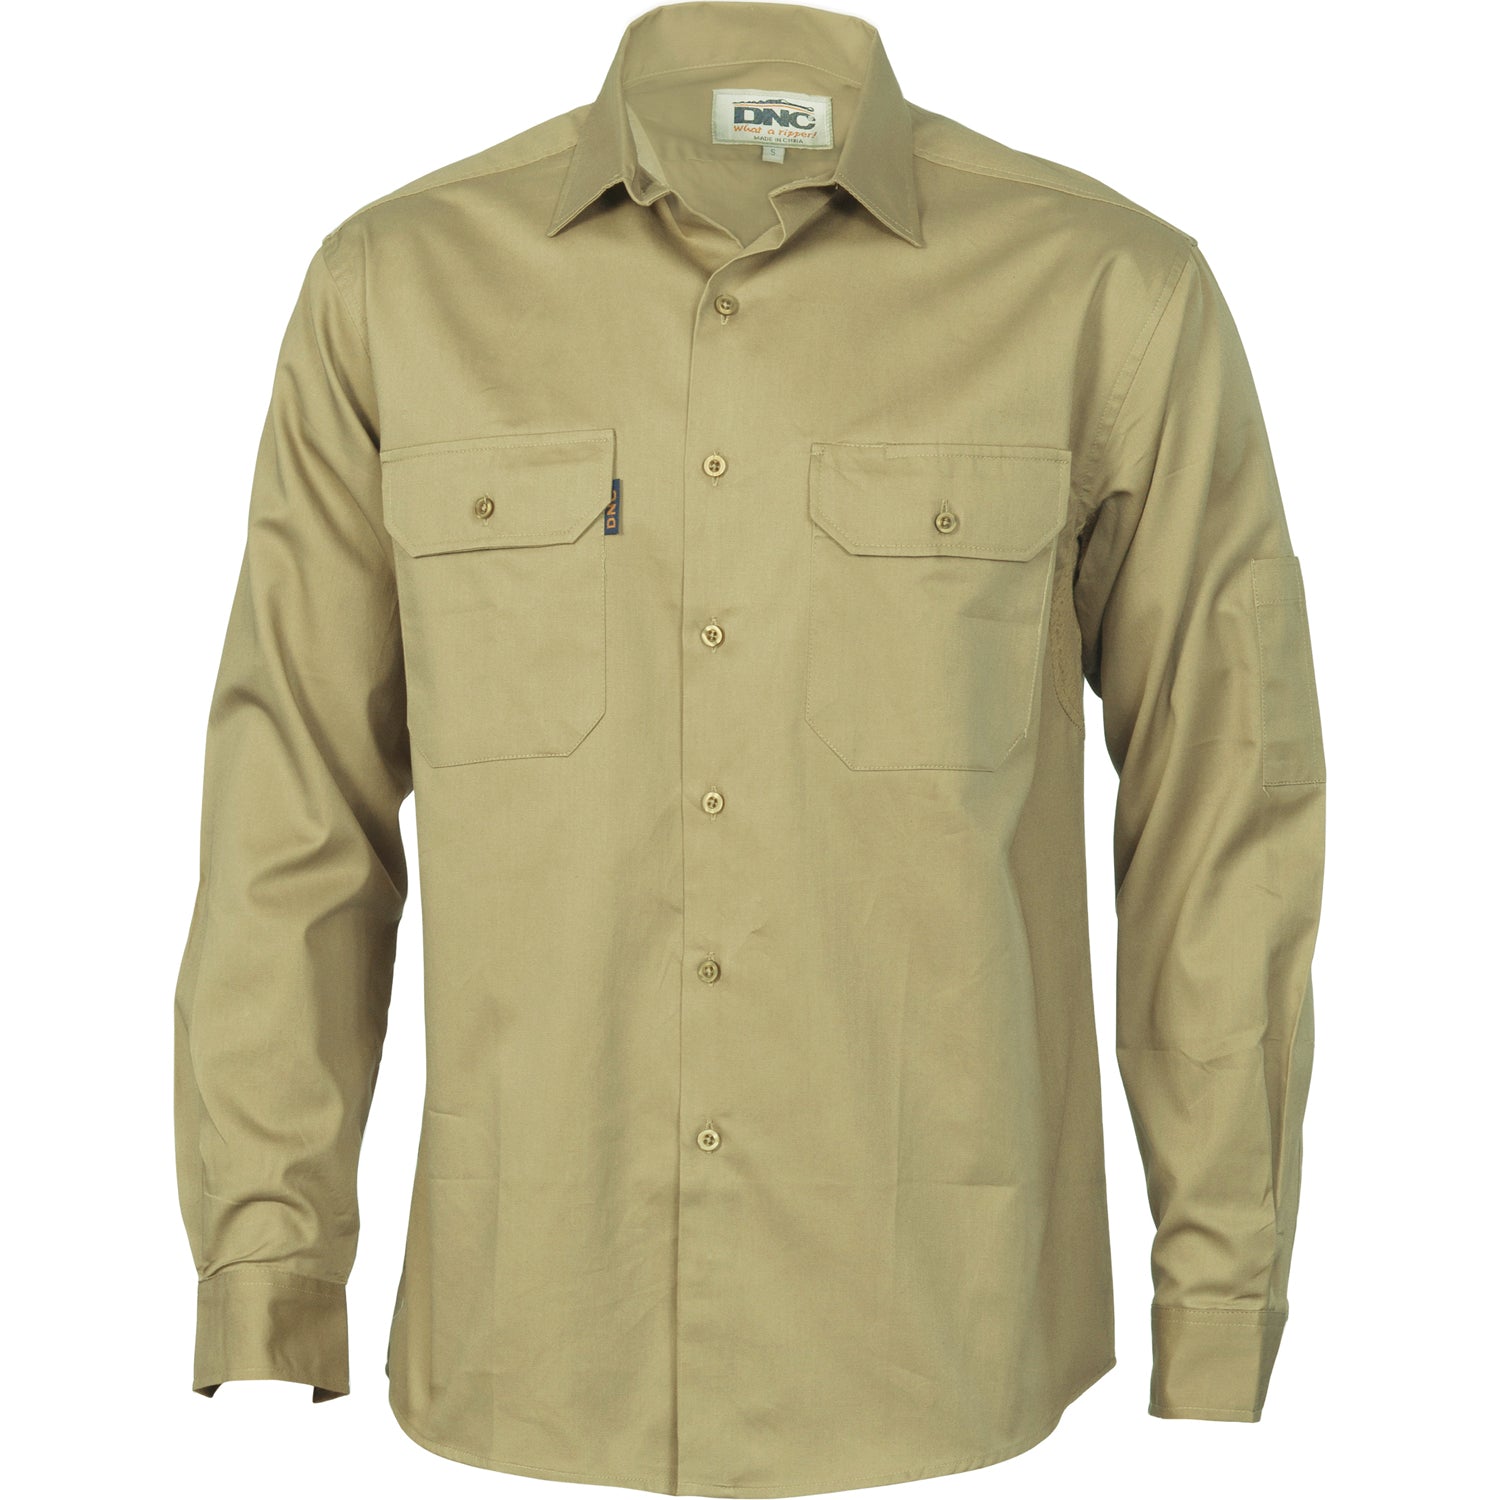 Dnc 3208 Cool-breeze Work Shirt- Long Sleeve